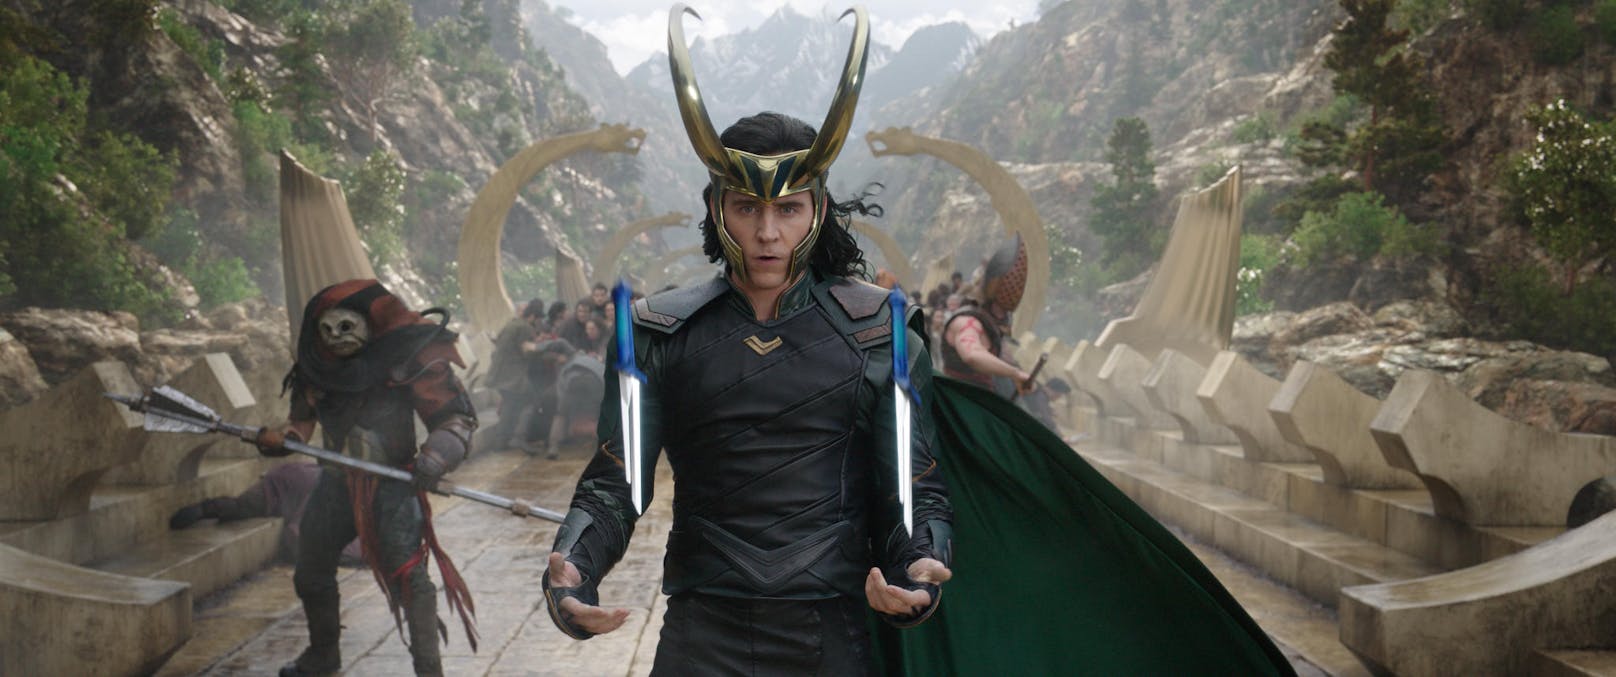 Tom Hiddleston als Loki in "Thor: Ragnarok"